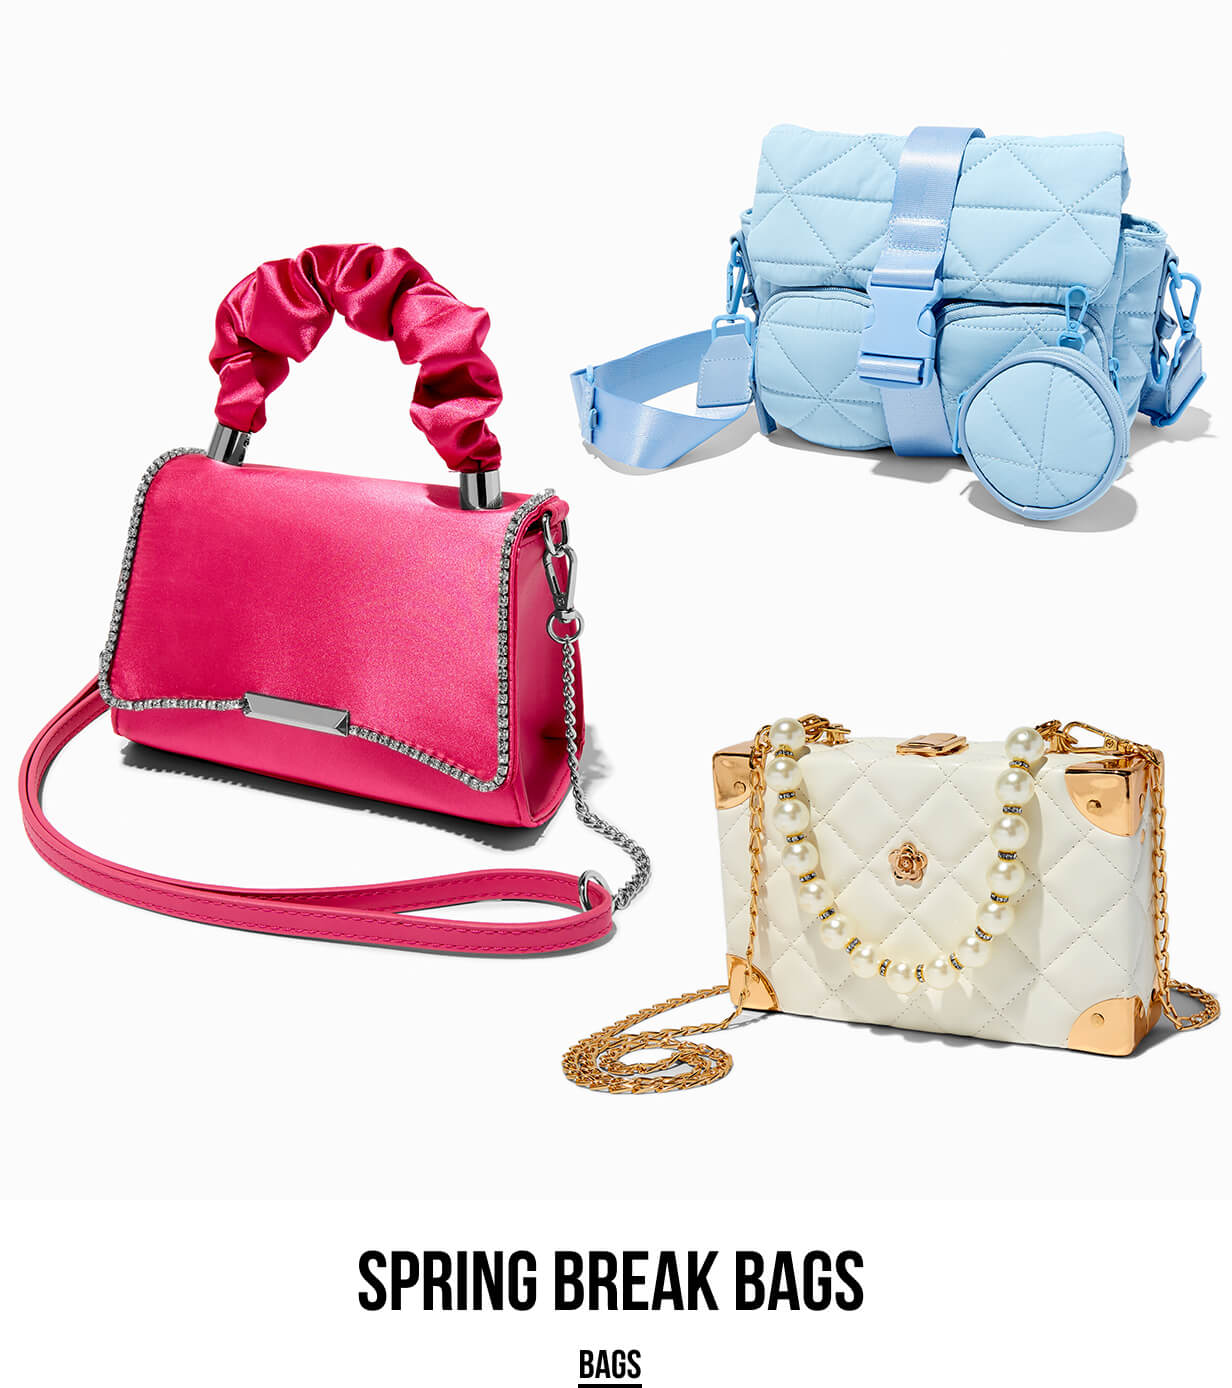 Spring Break Bags - BAGS